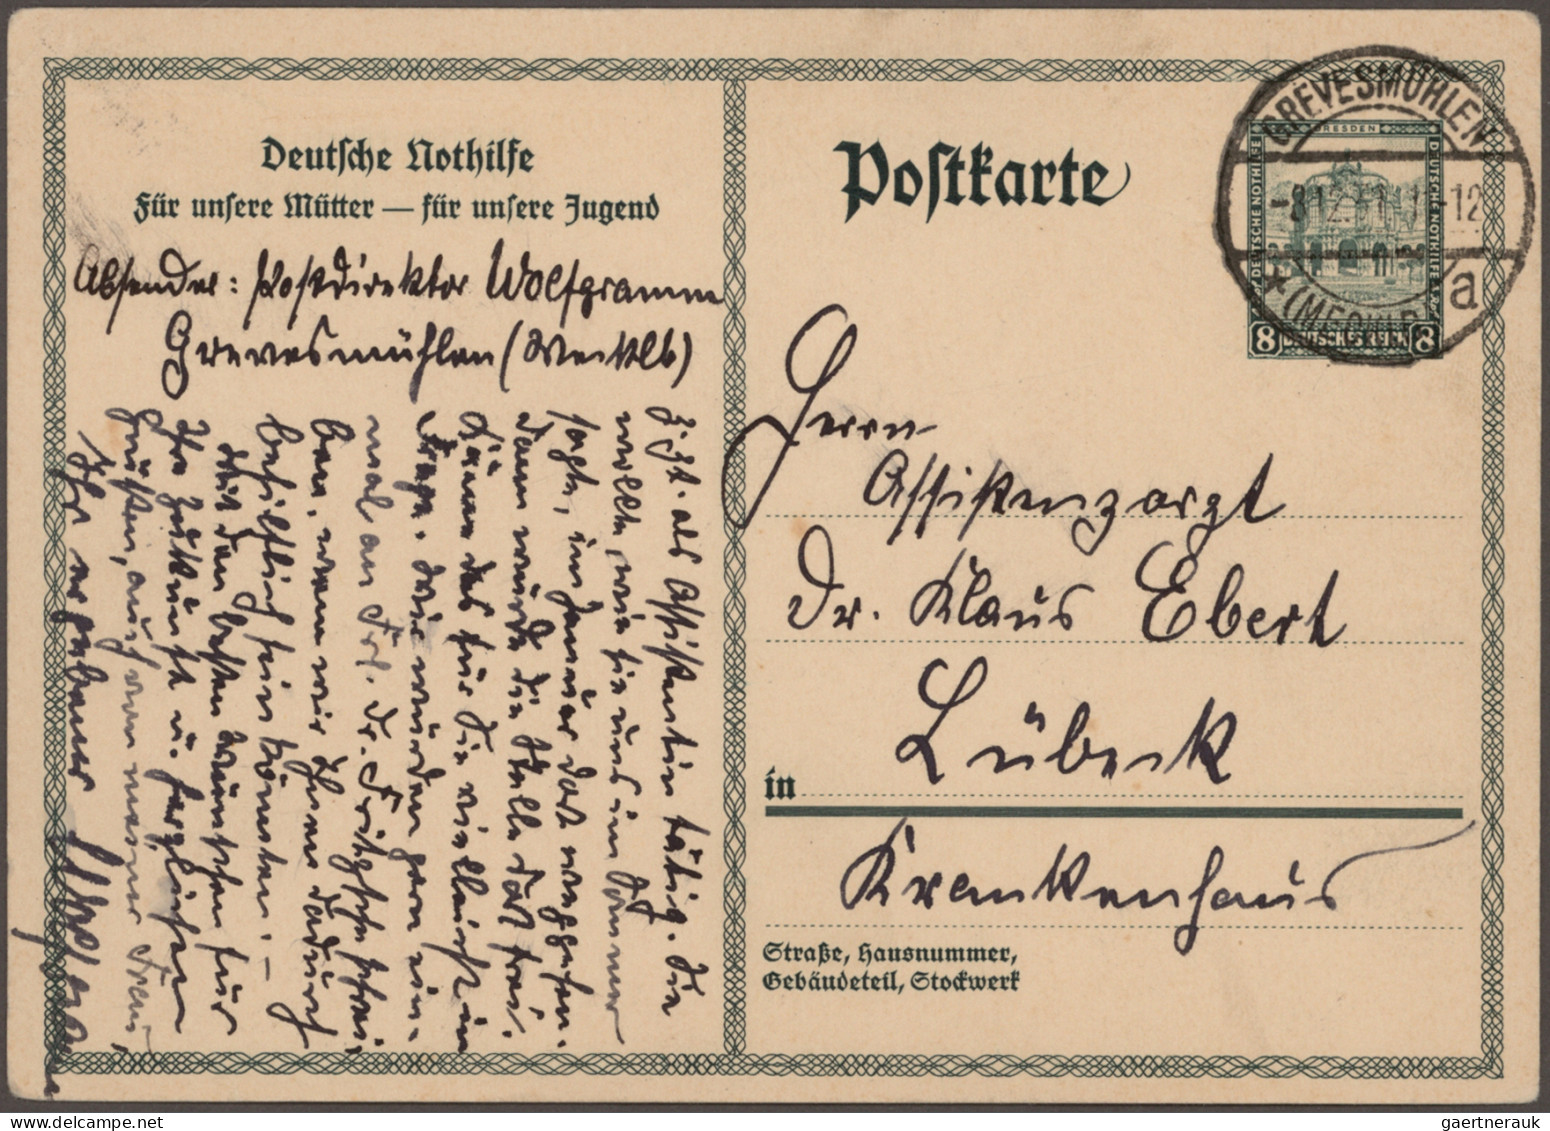 Deutsches Reich - Ganzsachen: 1921/1936, Sammlung von ca. 178 fast nur gebraucht